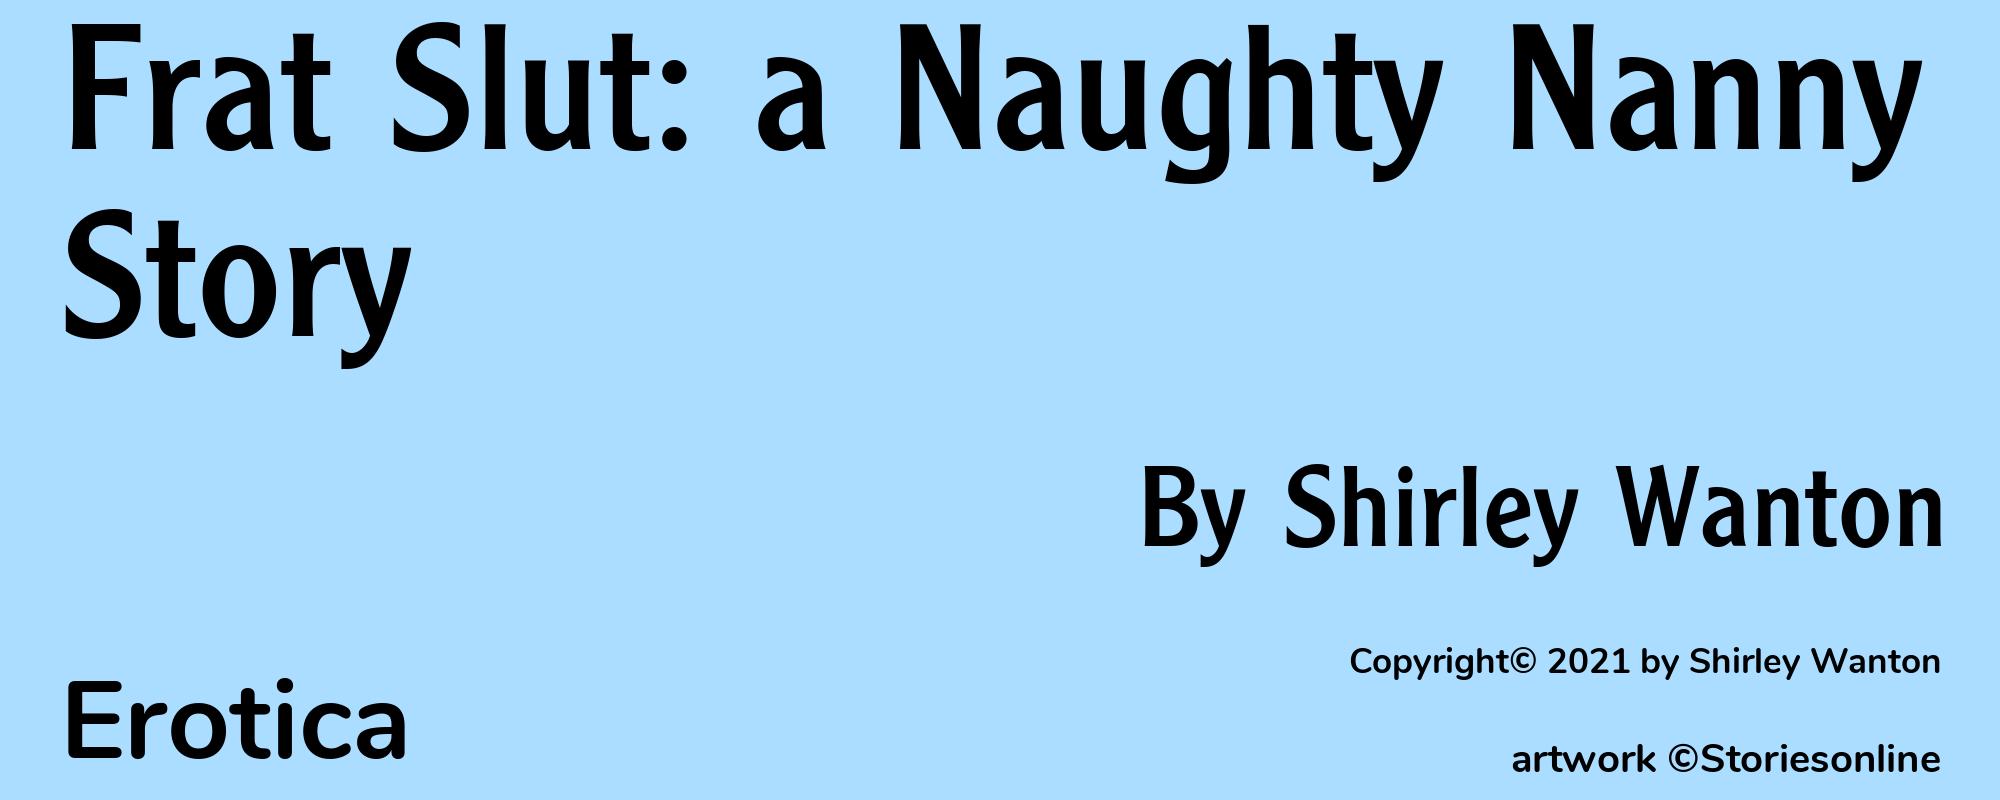 Frat Slut: a Naughty Nanny Story - Cover